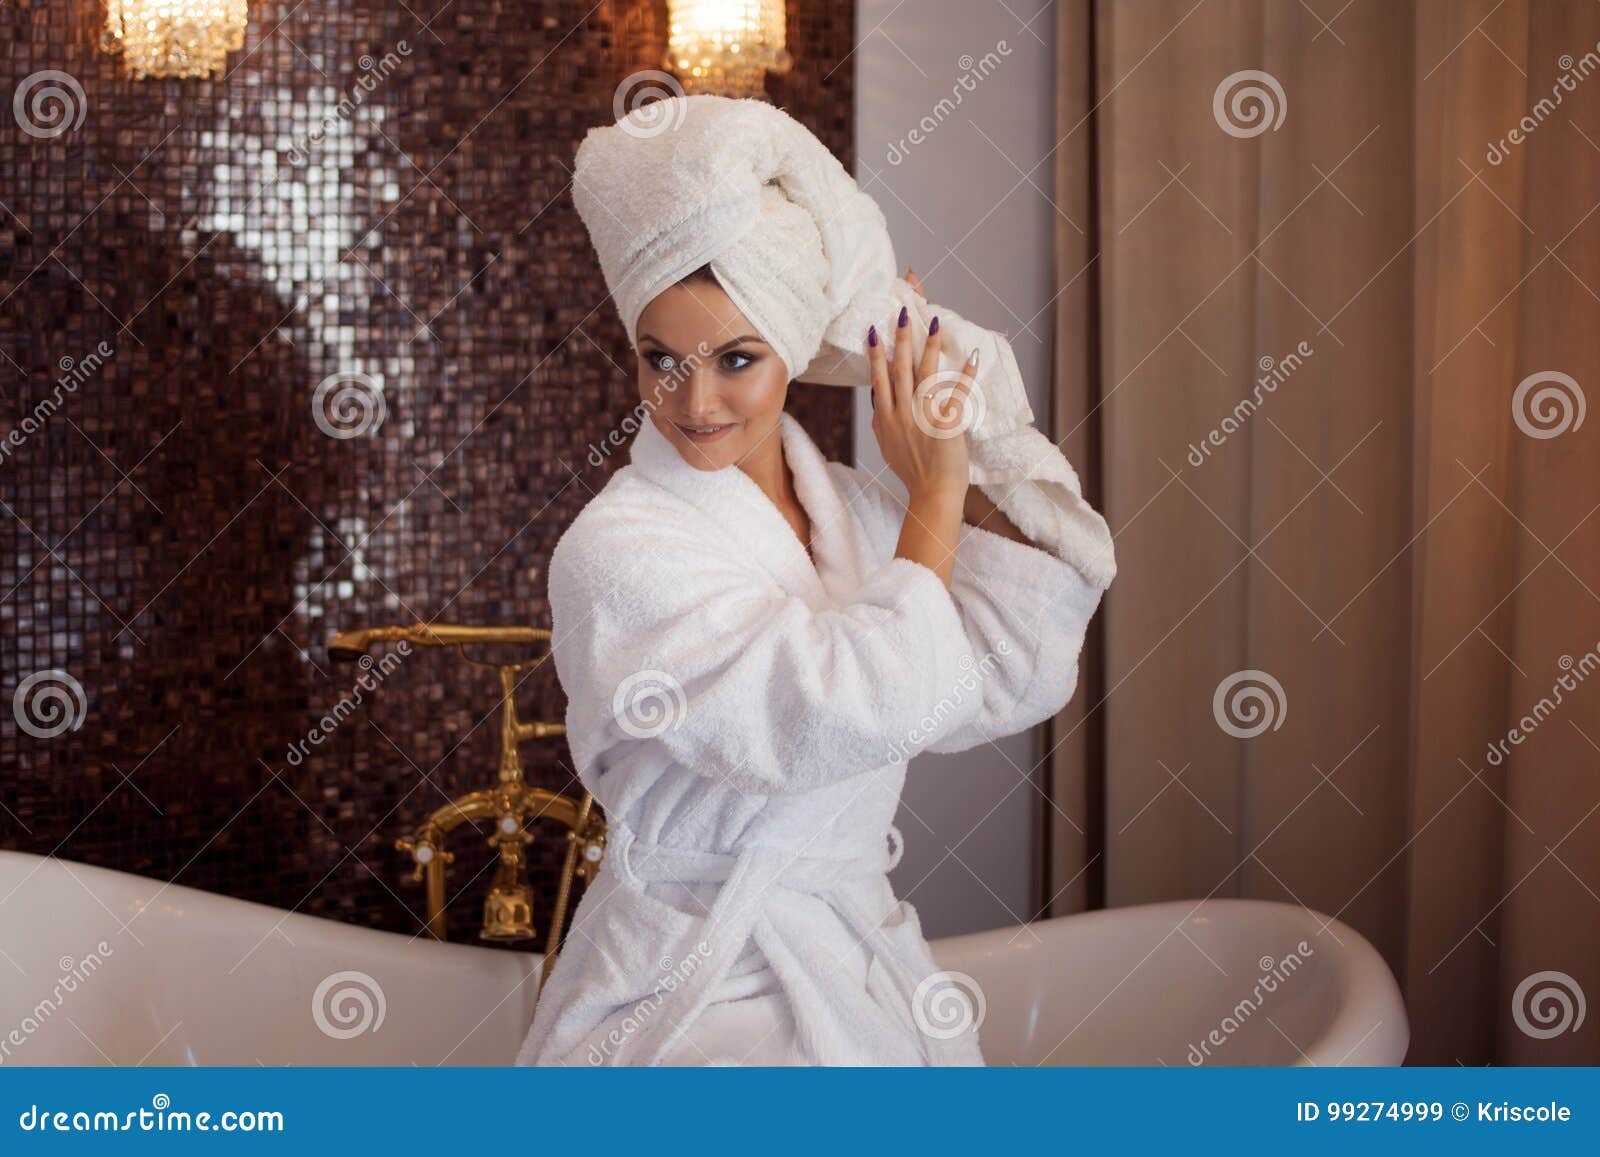 Жена после ванны. Девушка в халате и полотенце на голове. Фотосессия в халате и полотенце. Девушка с полотенцем на голове. Девушка в халате ванна.